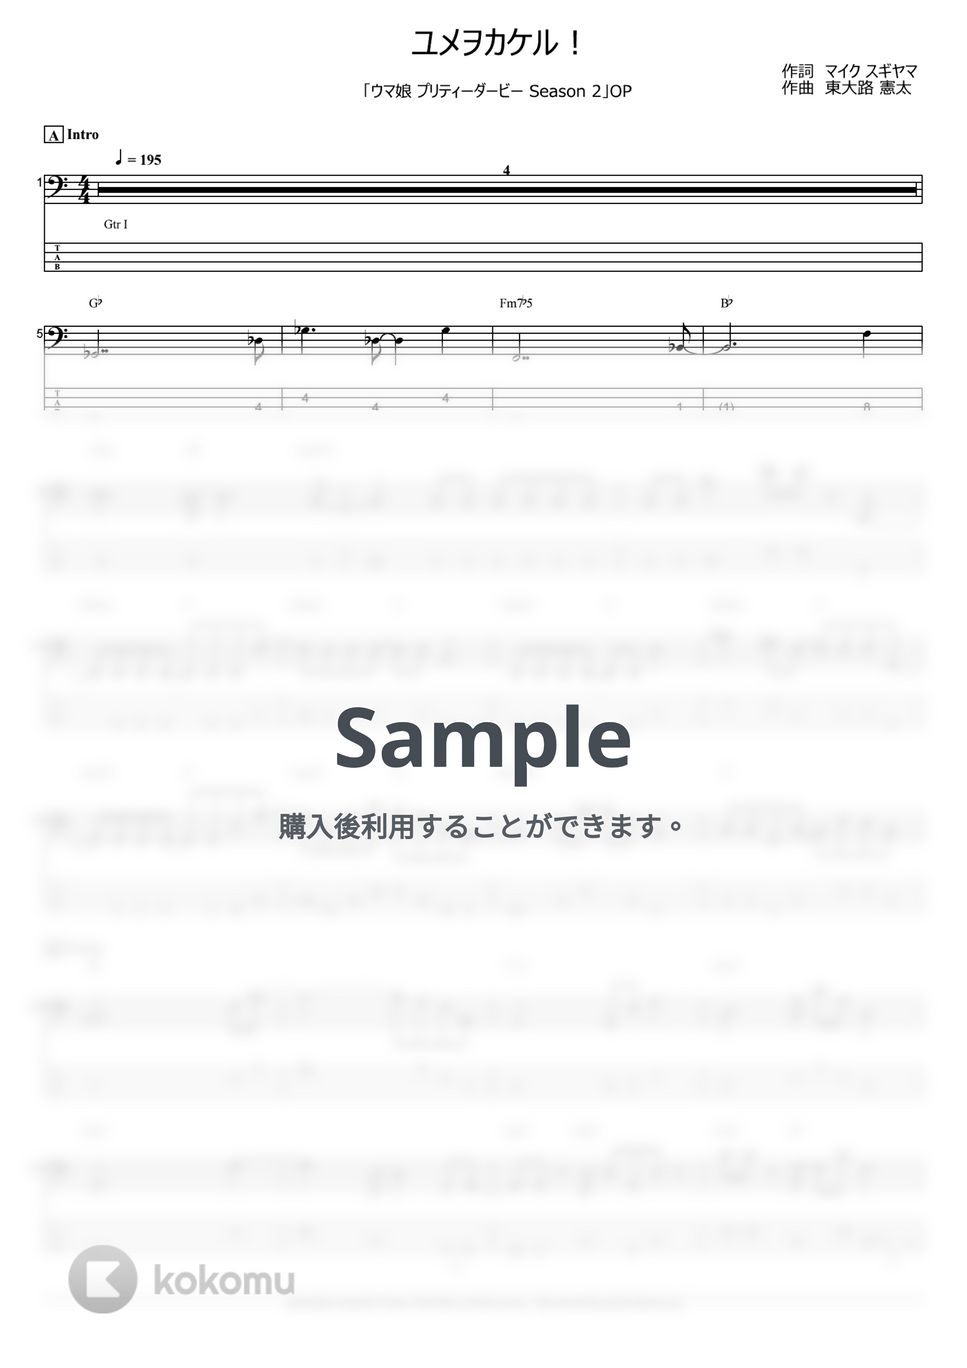 ウマ娘 プリティーダービー - ユメヲカケル！ (ベース Tab譜 4弦 / ウマ娘) by T's bass score